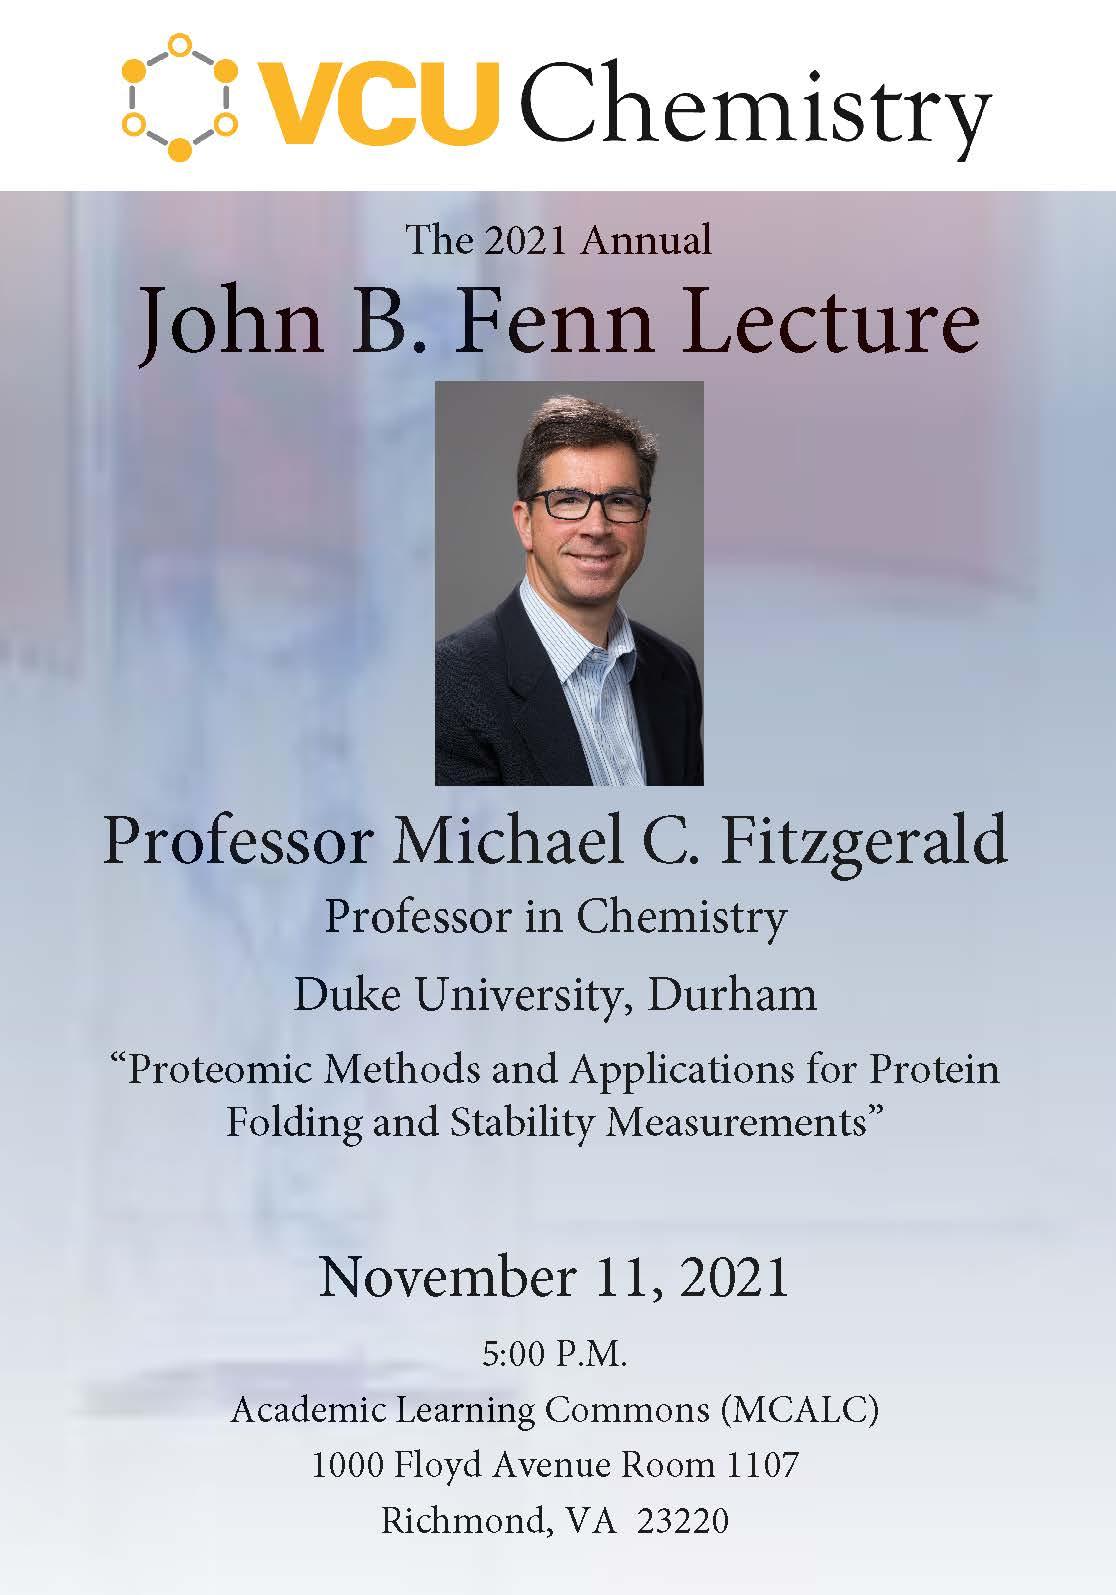 2021 Annual Fenn Lecture invite - Professor Michael C. Fitzgerald, Duke University 